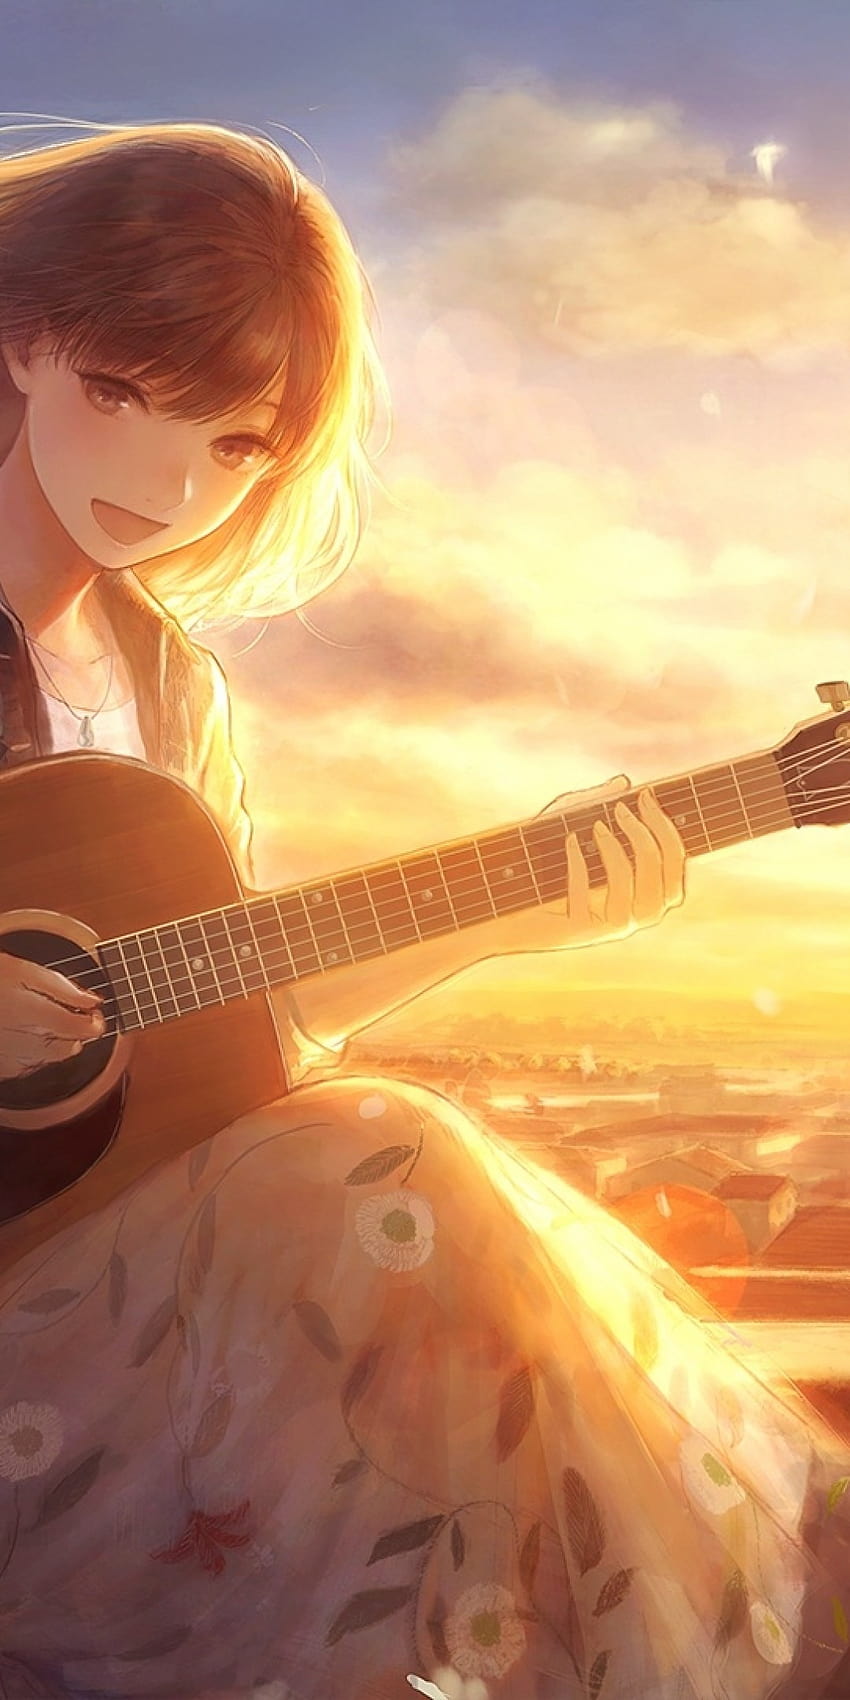 1080x2160 Anime-Mädchen, Gesang, Sonnenlicht, Gitarre, Instrument, Blumen, Wind, Blütenblätter, Katze, Landschaft für Huawei Mate 10, Anime-Gesang HD-Handy-Hintergrundbild